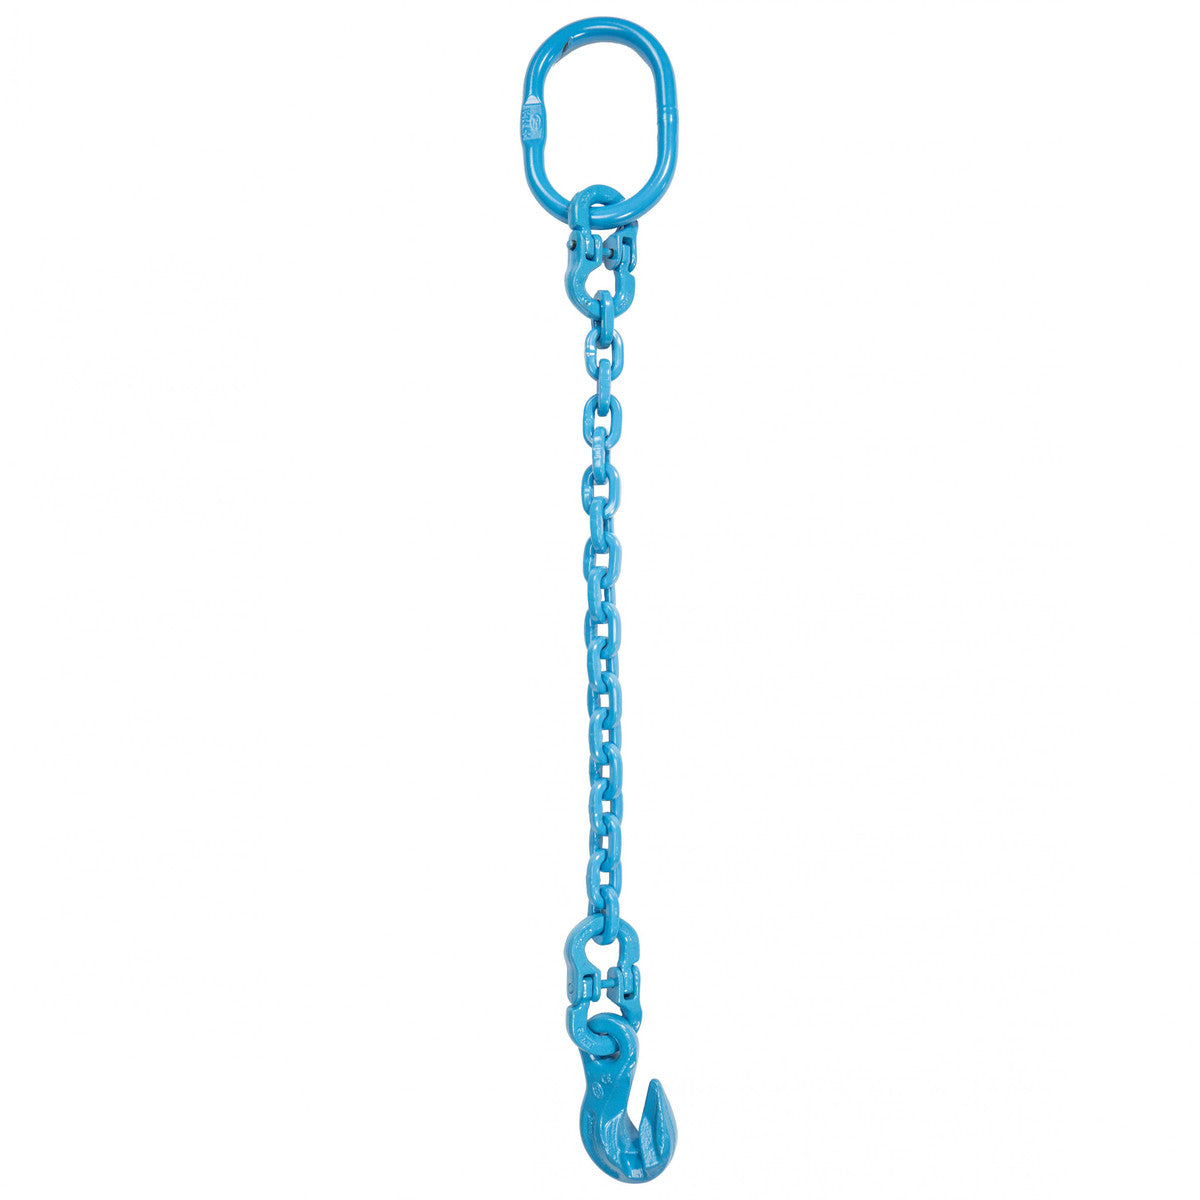 9/32" x 16' - Pewag Single Leg Chain Sling w/ Grab Hook - Grade 120